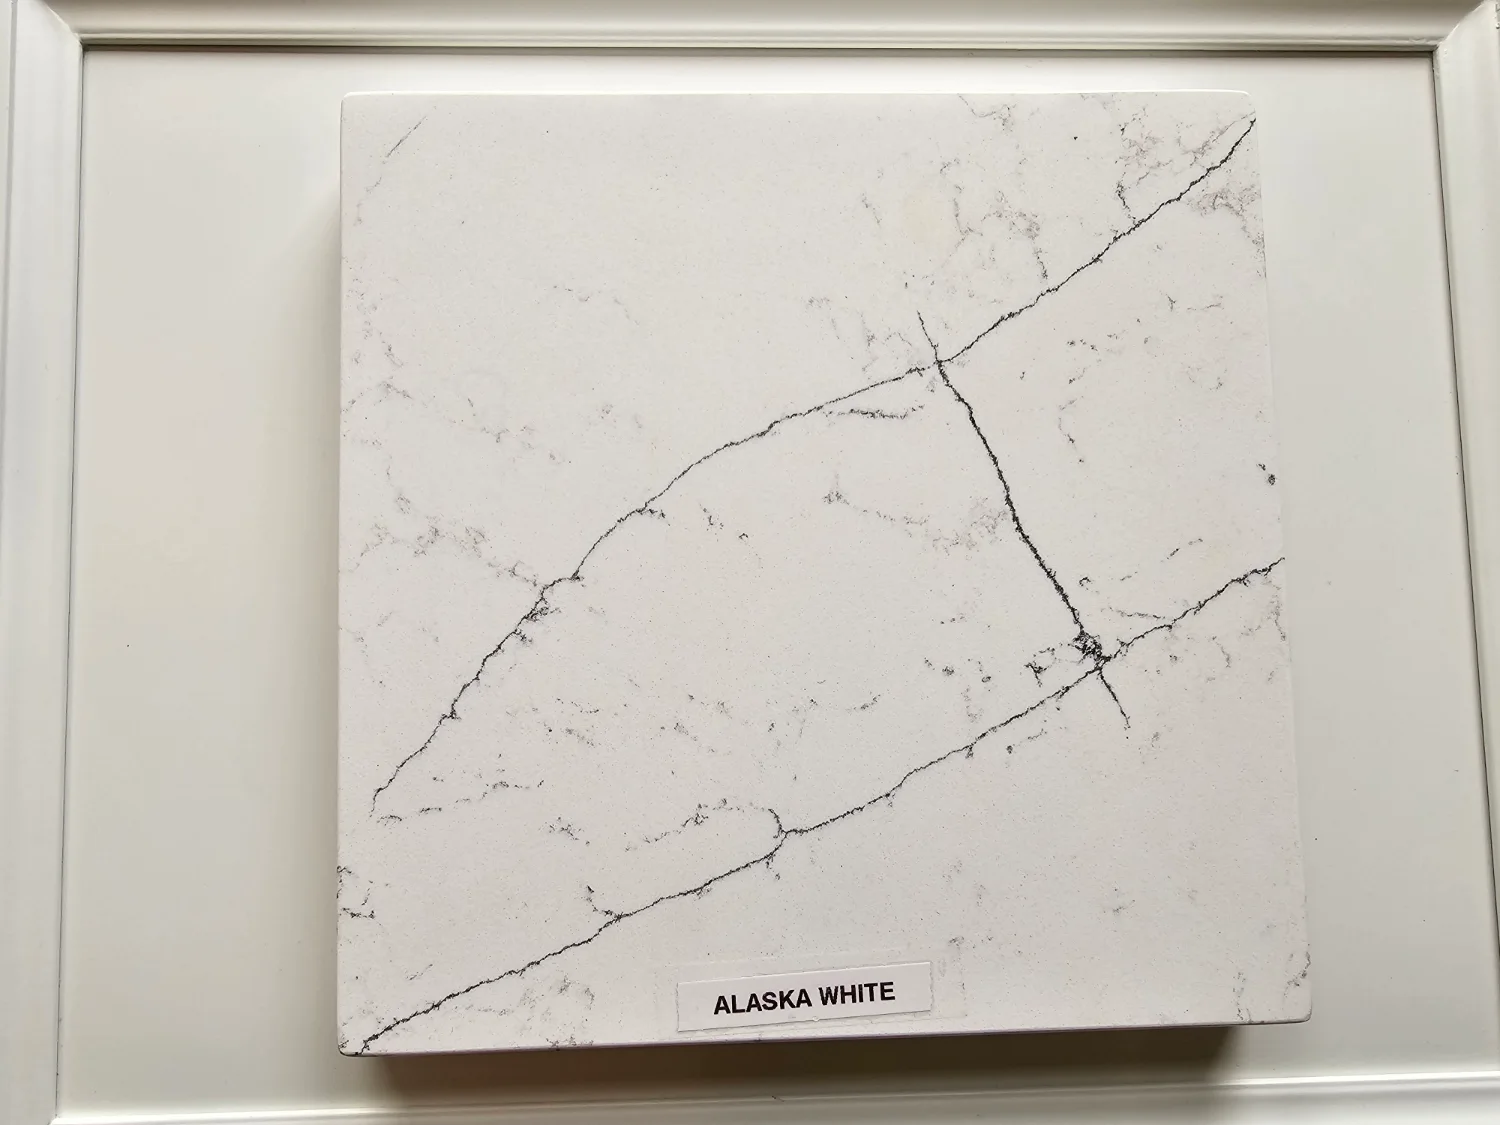 Alaska white quartz countertops